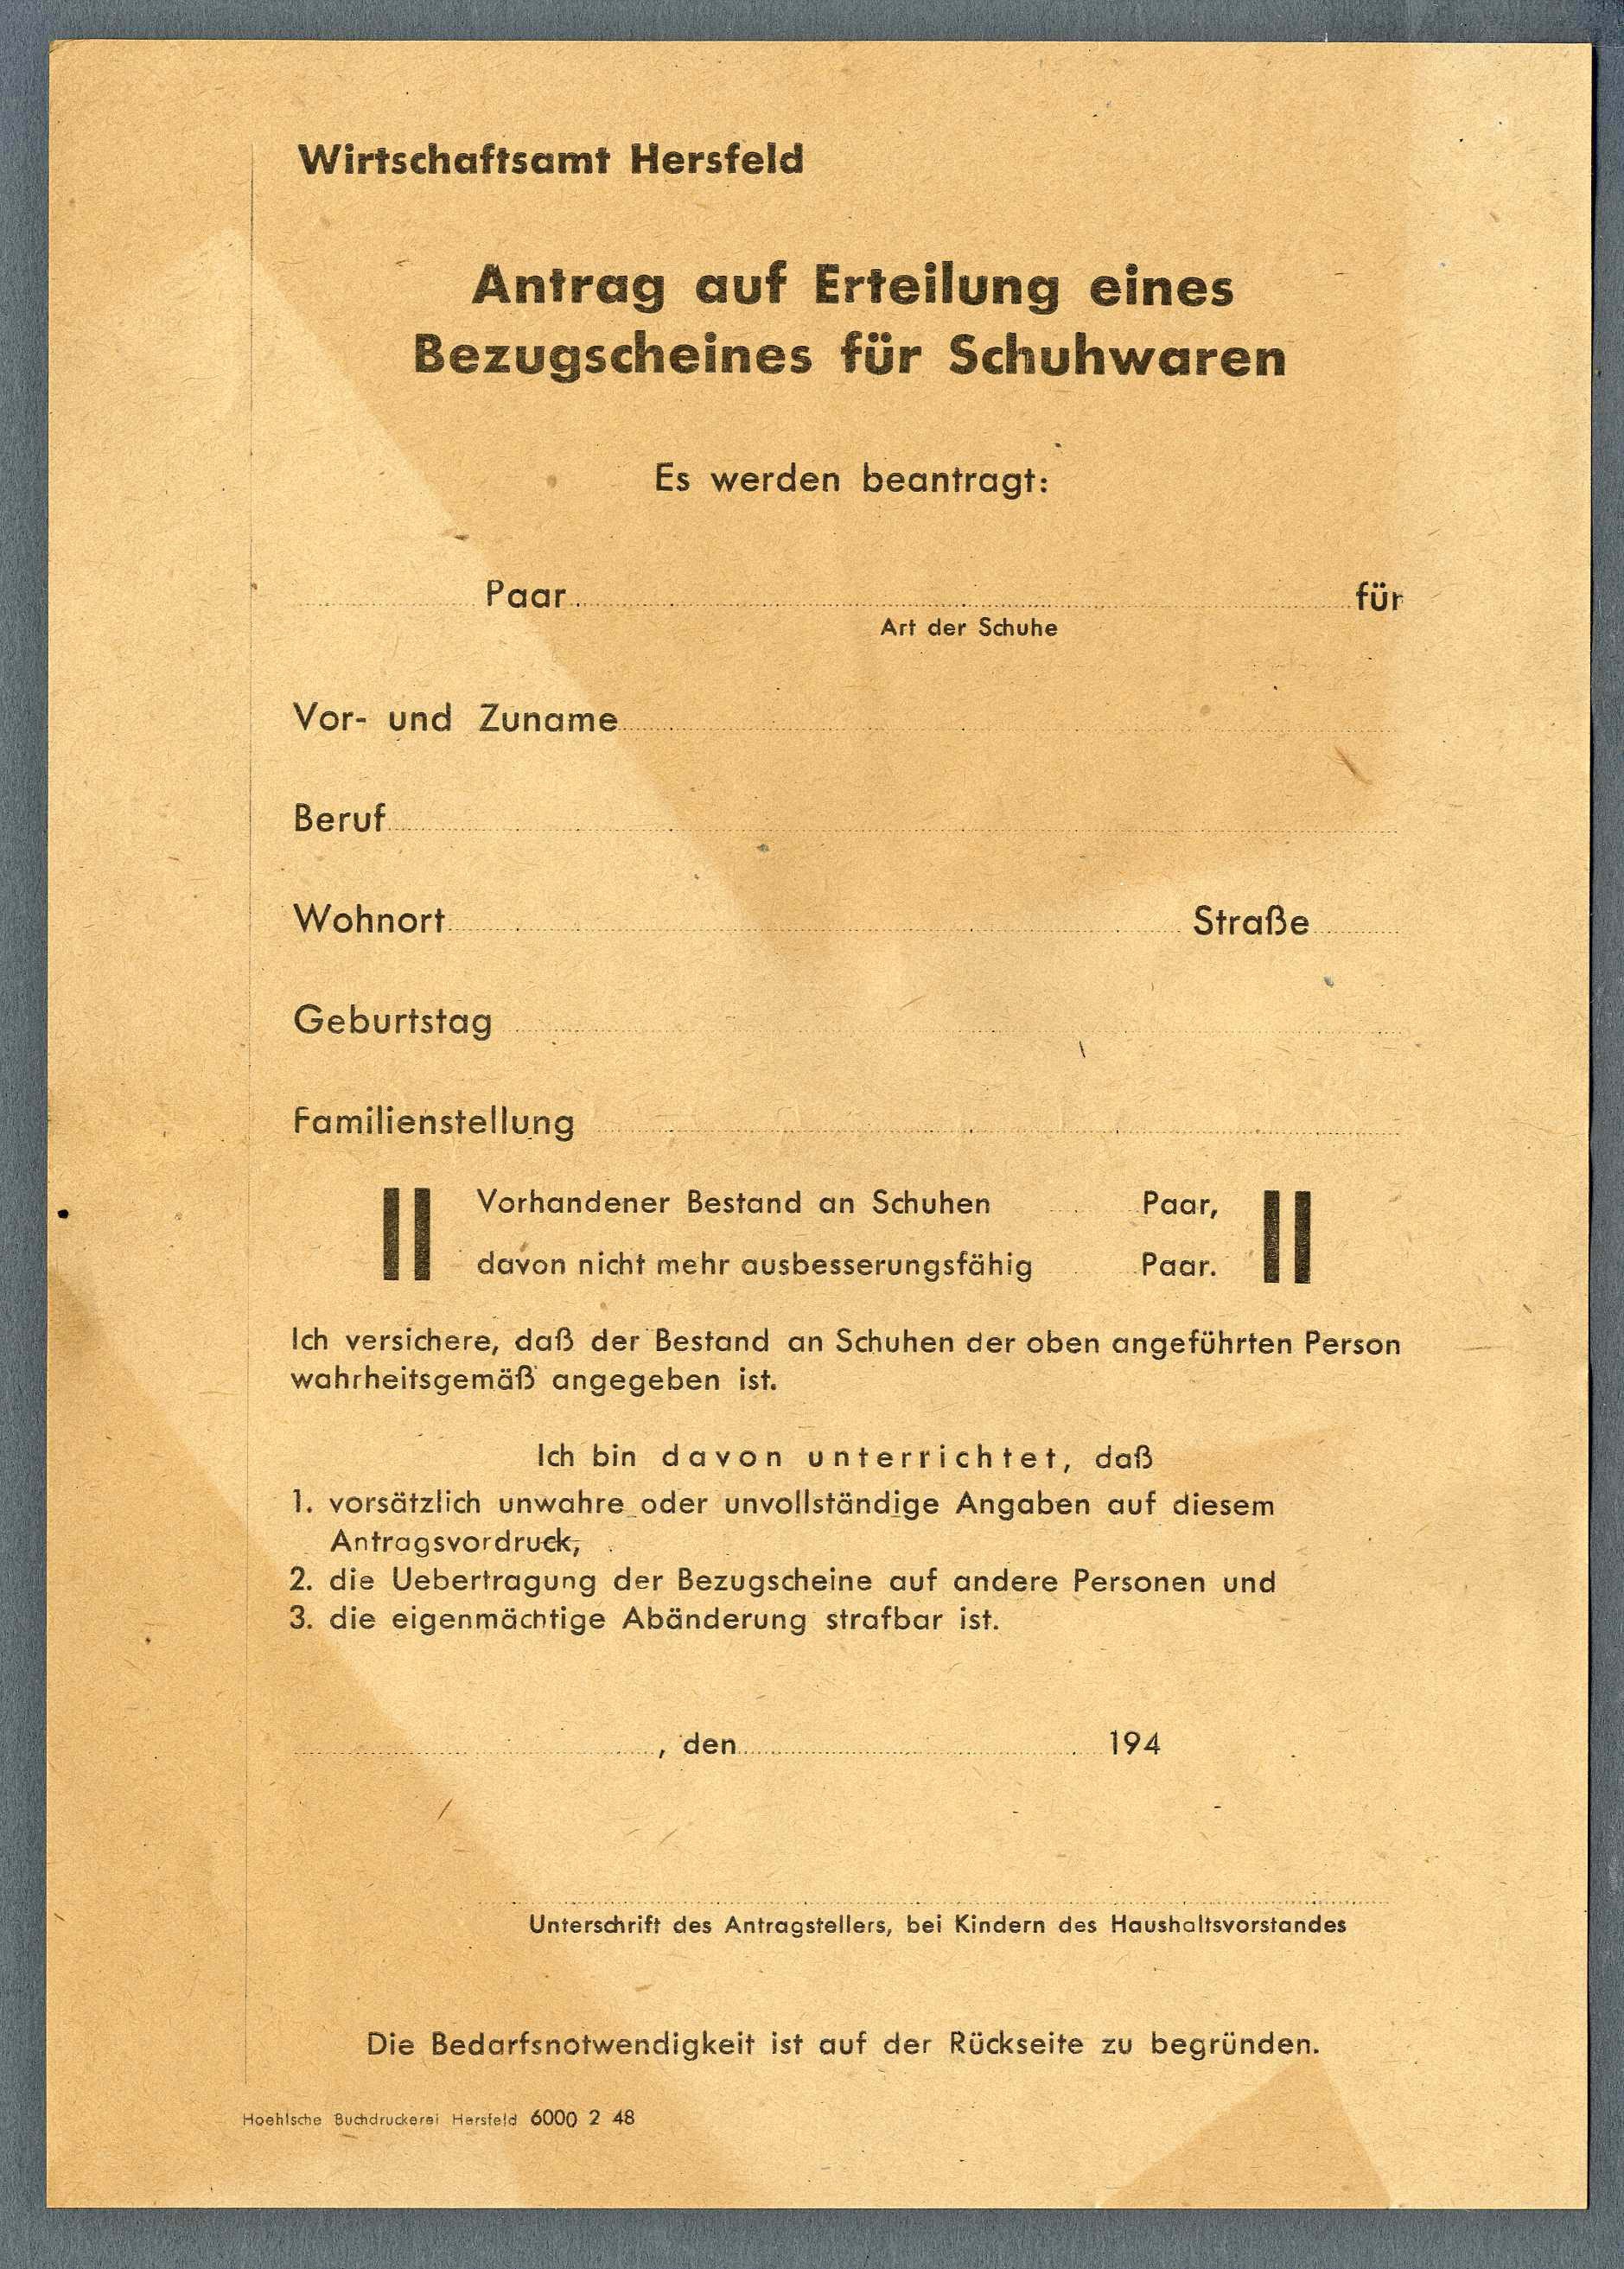 Antrag auf einen Bezugschein 'Schuhwaren' (Werra-Kalibergbau-Museum, Heringen/W. CC BY-NC-SA)